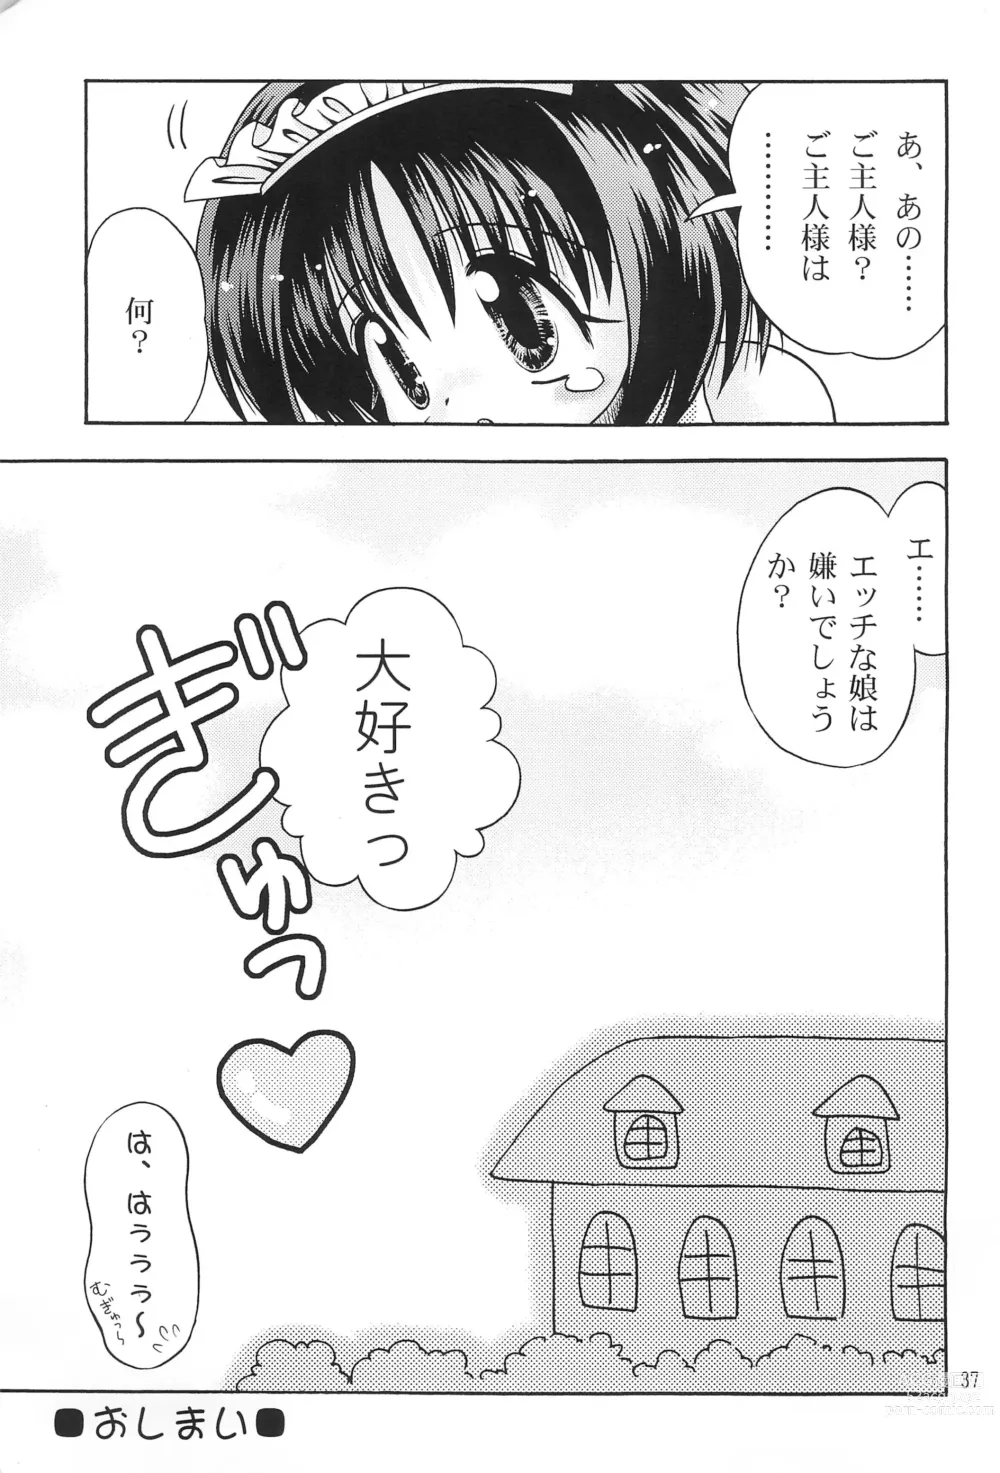 Page 39 of doujinshi Kokuin -Chouai-